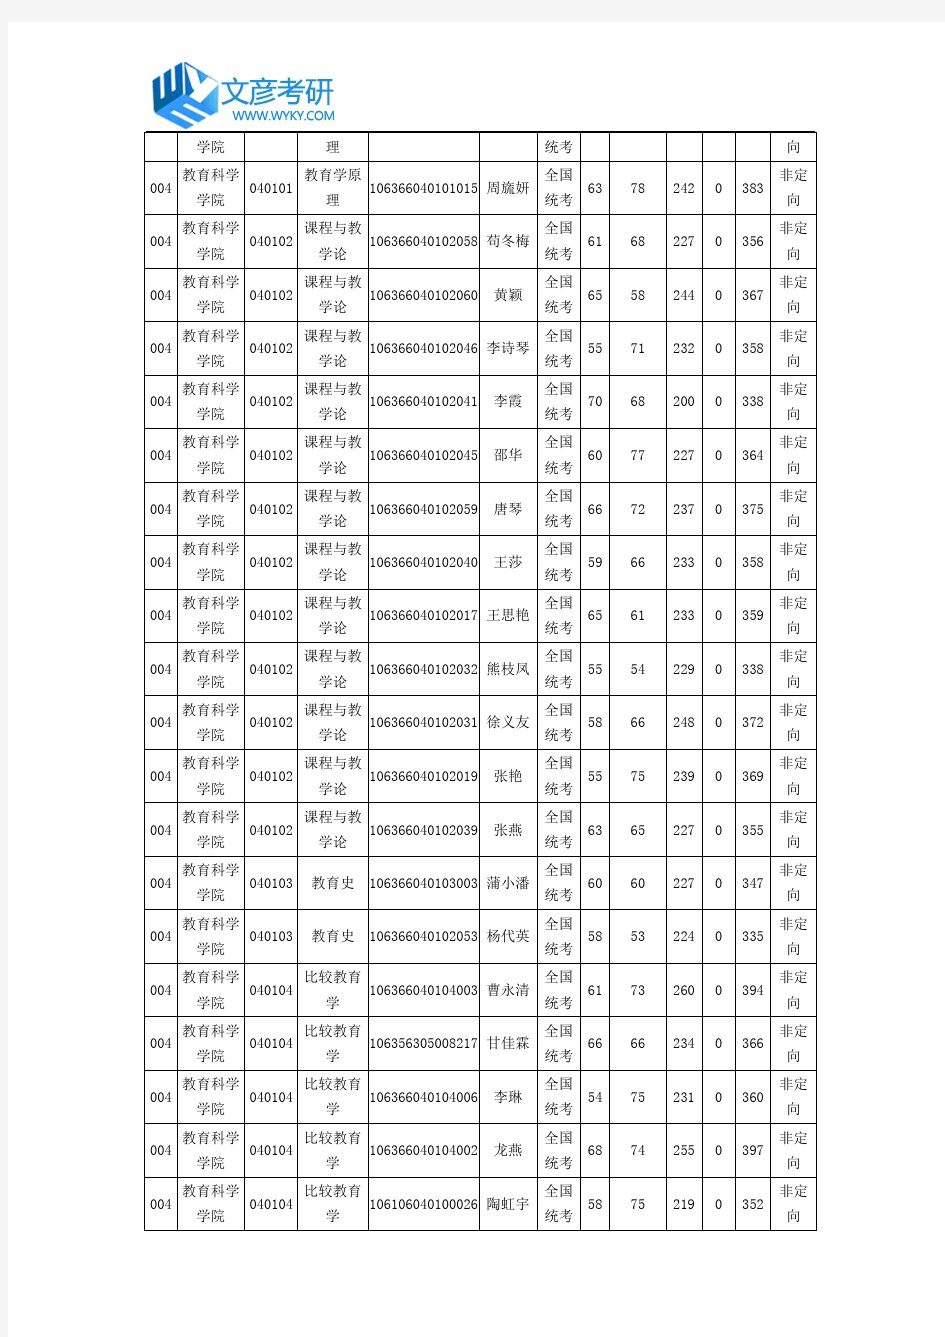 四川师范大学继续教育学院2016年硕士研究生拟录取名单